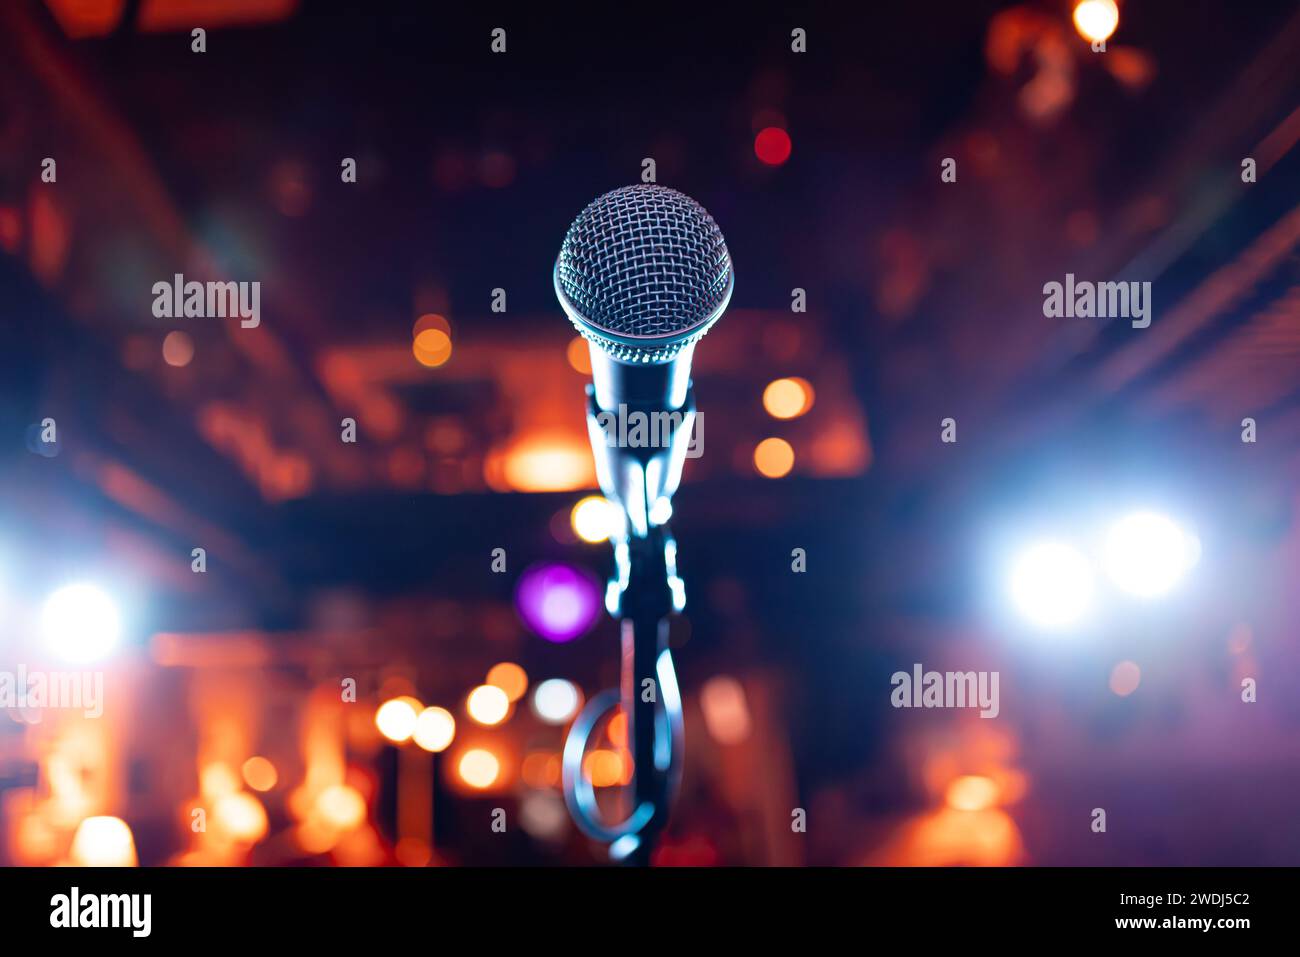 Spettacolo pubblico sul palco microfono sul palco sullo sfondo di un auditorium. Profondità di campo ridotta. Foto Stock